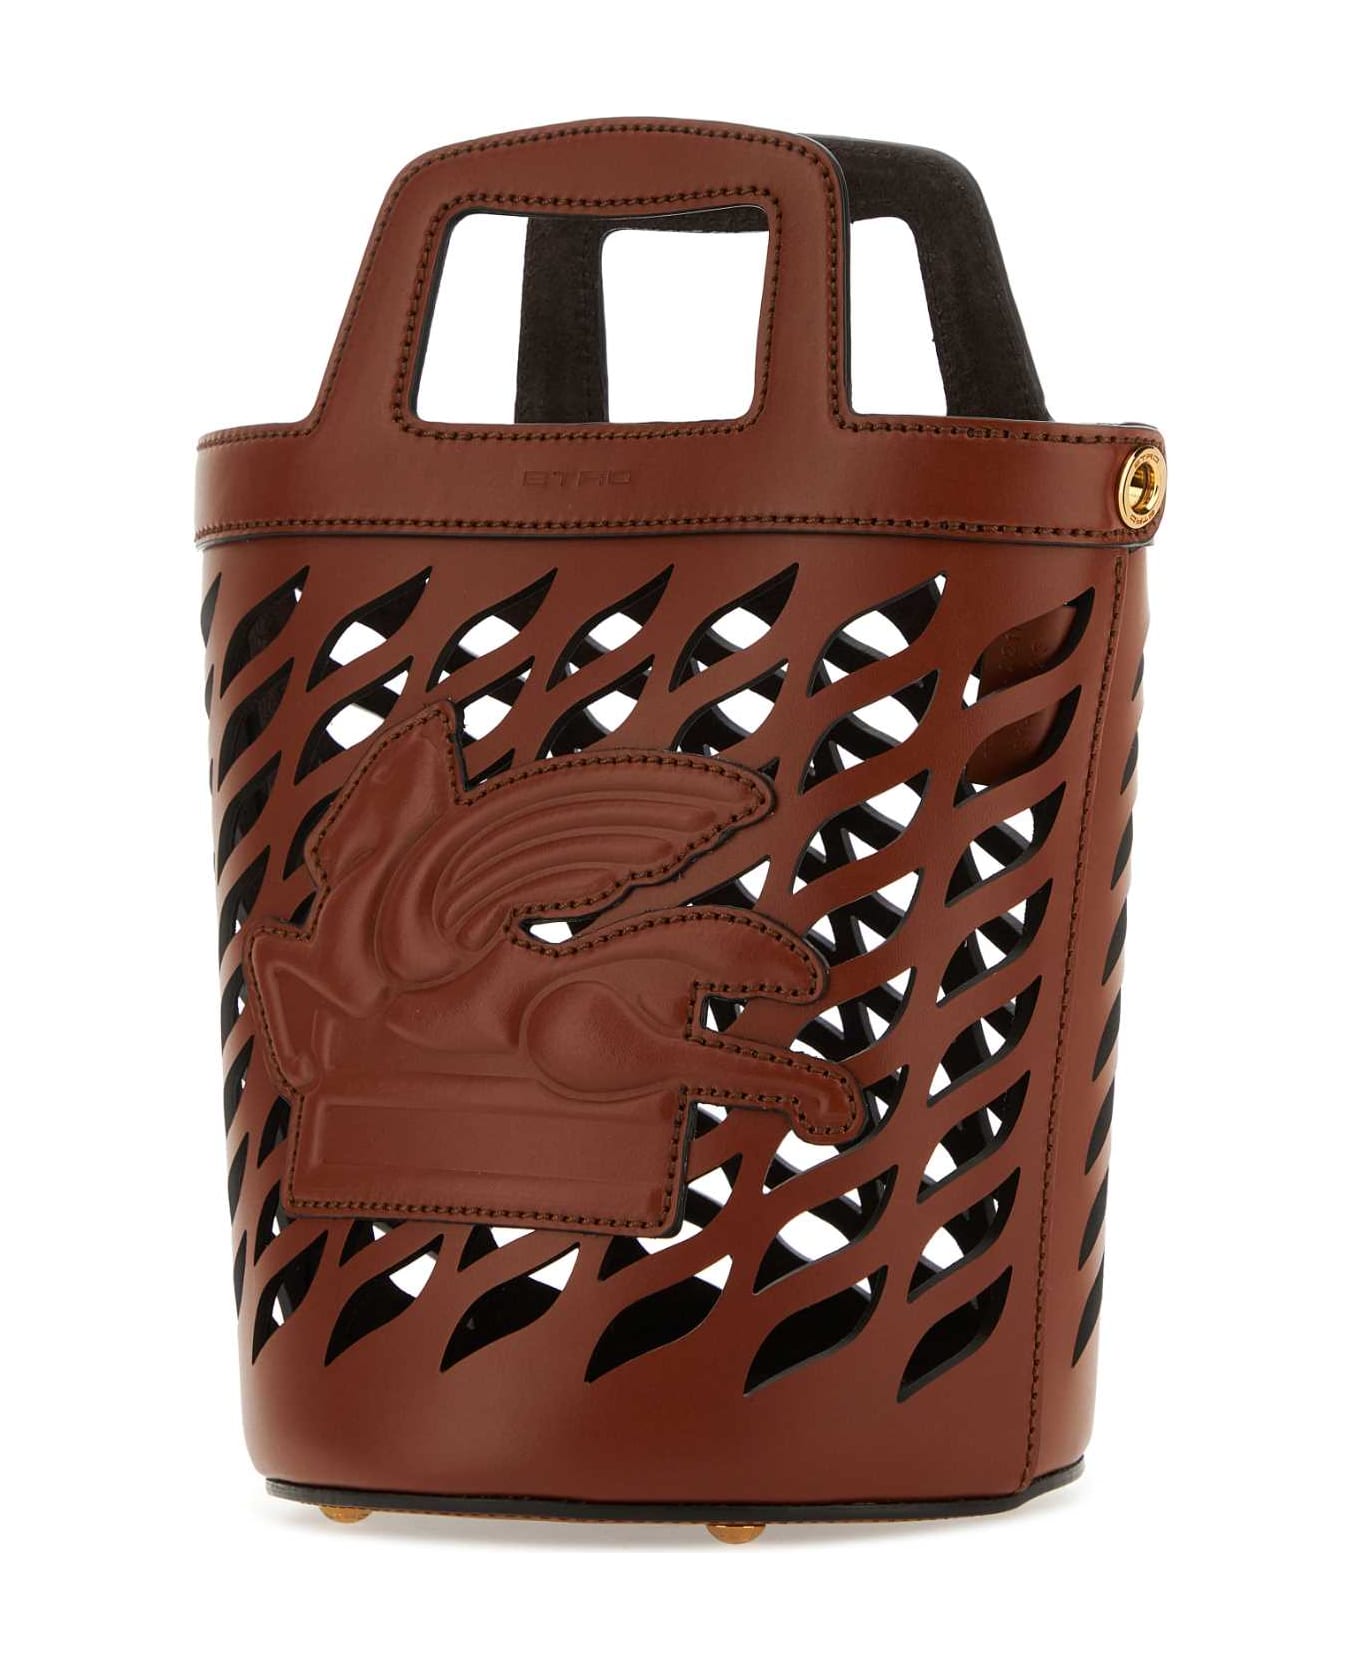 Etro Caramel Leather Bucket Bag - M0022